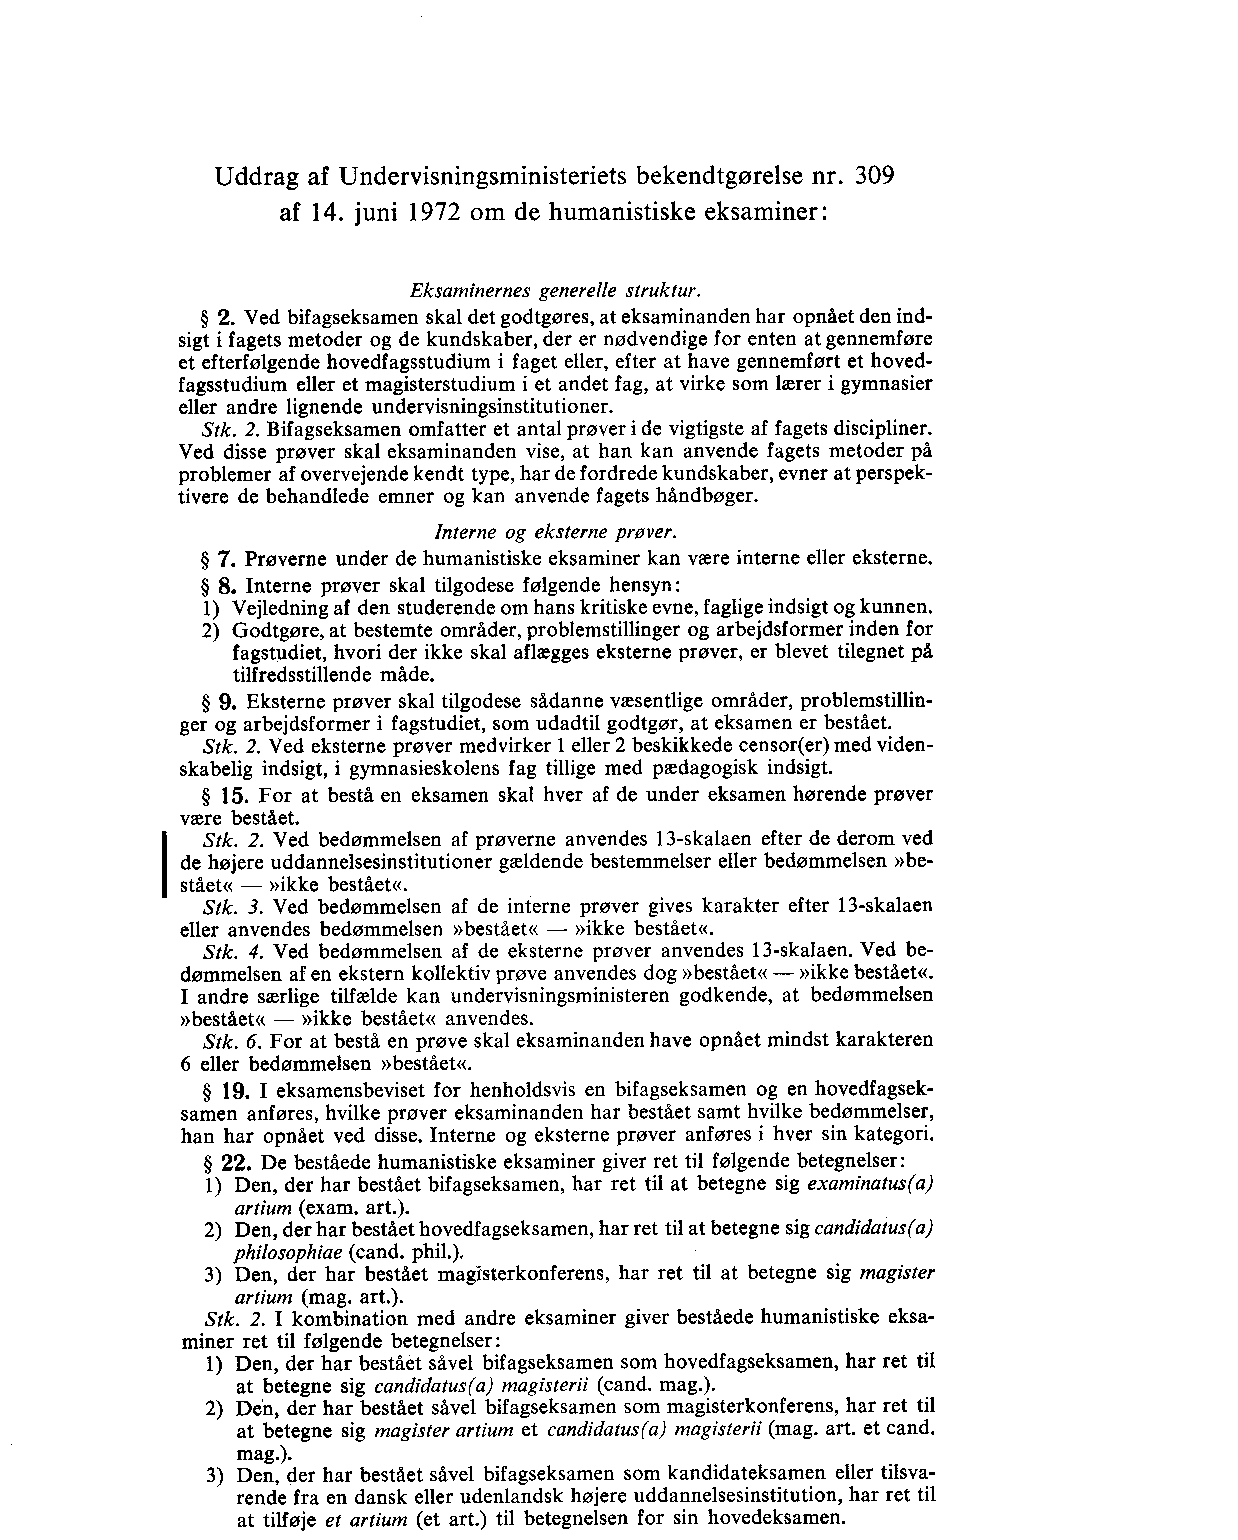 Side 3: Uddrag af Undervisningsministeriets bekendtgørelse nr. 309 af 14. juni 1972 om de humanistiske eksaminer